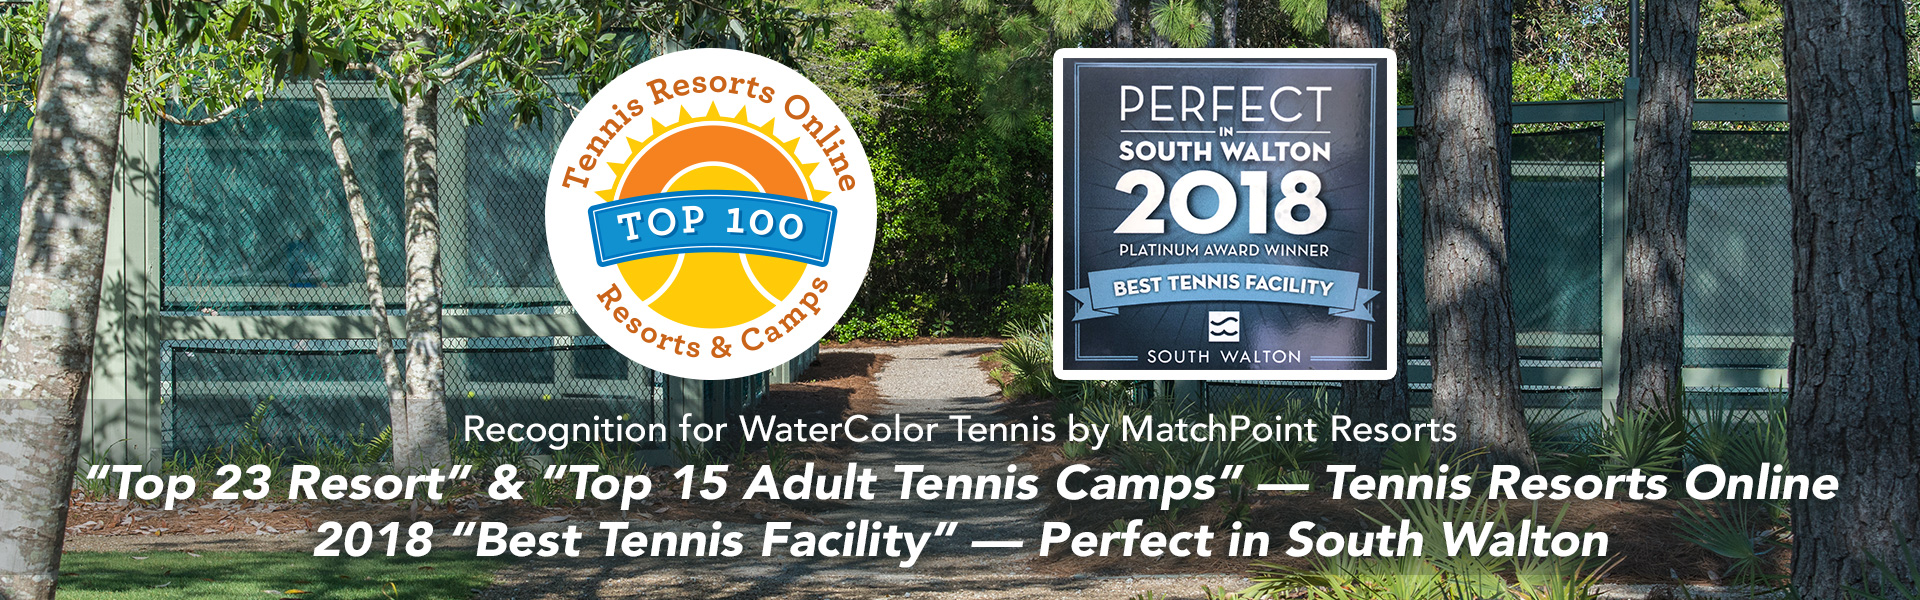 tennis resorts online top 100